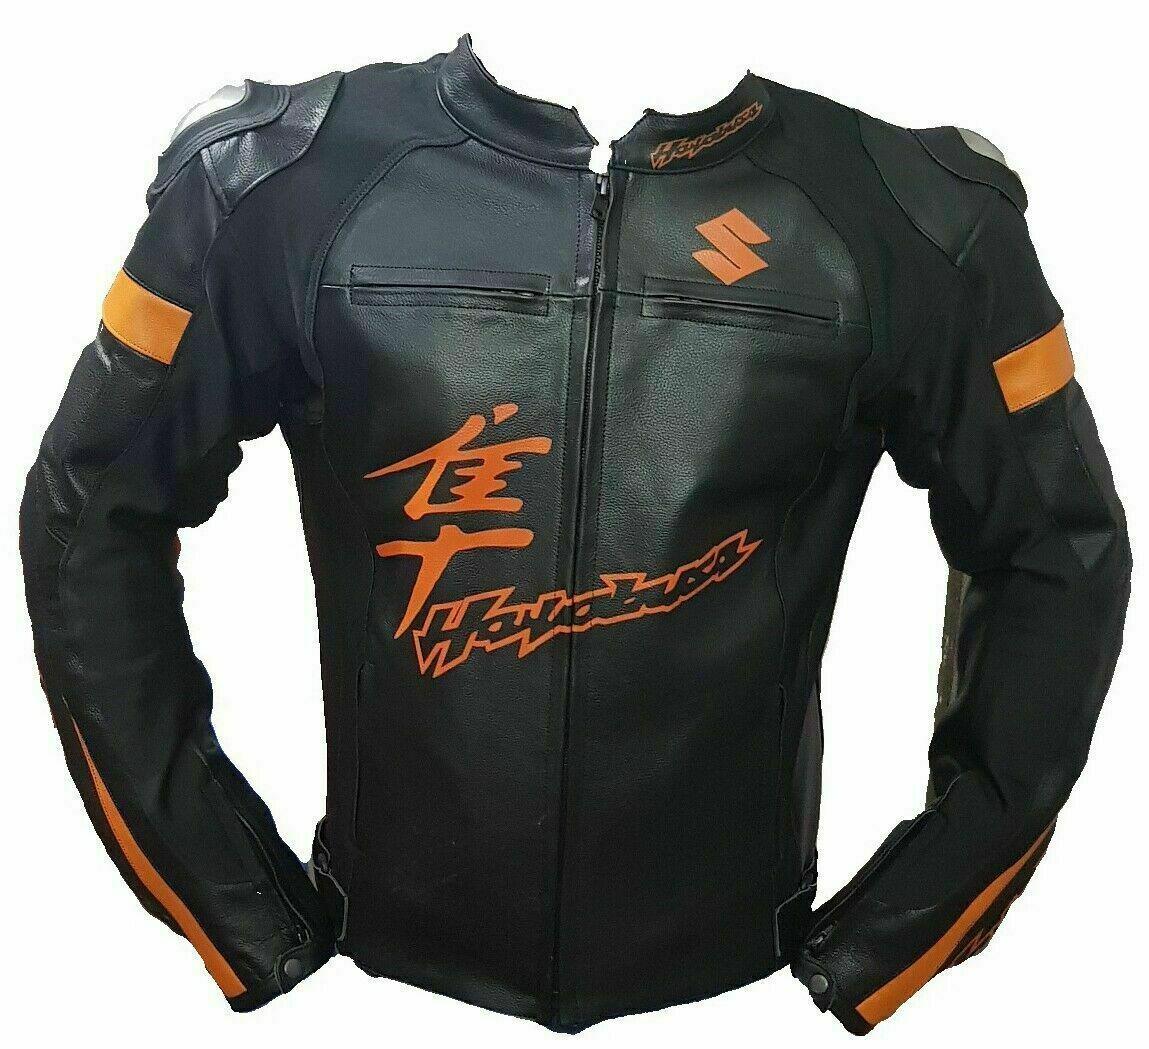 ZMJ-056 Racing Motorbike/Motorcycle Leather Jacket Custom Made Jacket For Bikers - ZEES MOTOR SPORTS